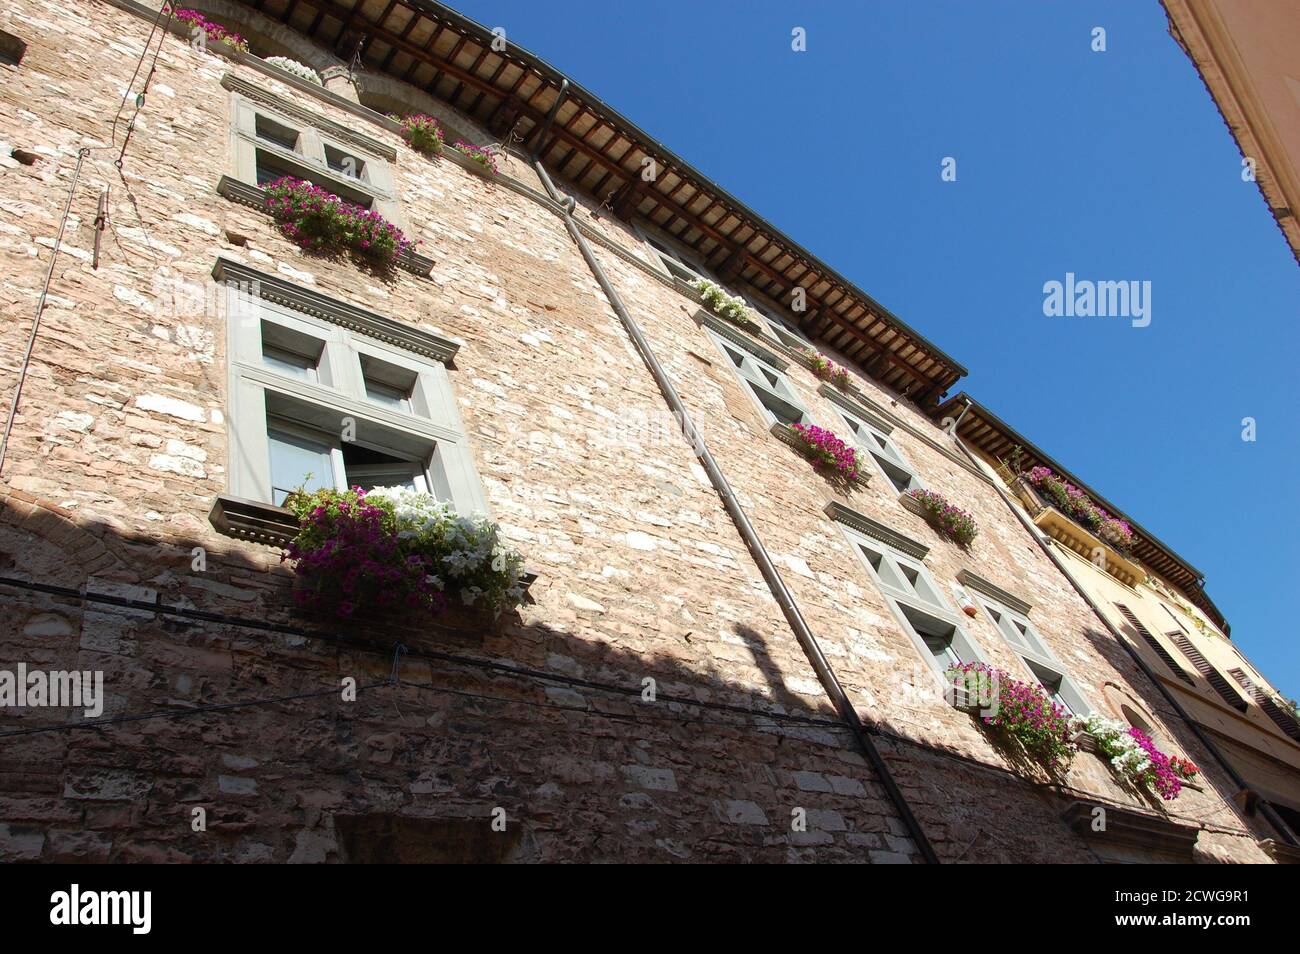 vue en angle sur une maison médiévale et fleurs sur les fenêtres Dans le village de Spello en Ombrie et clair été ciel au-dessus Banque D'Images